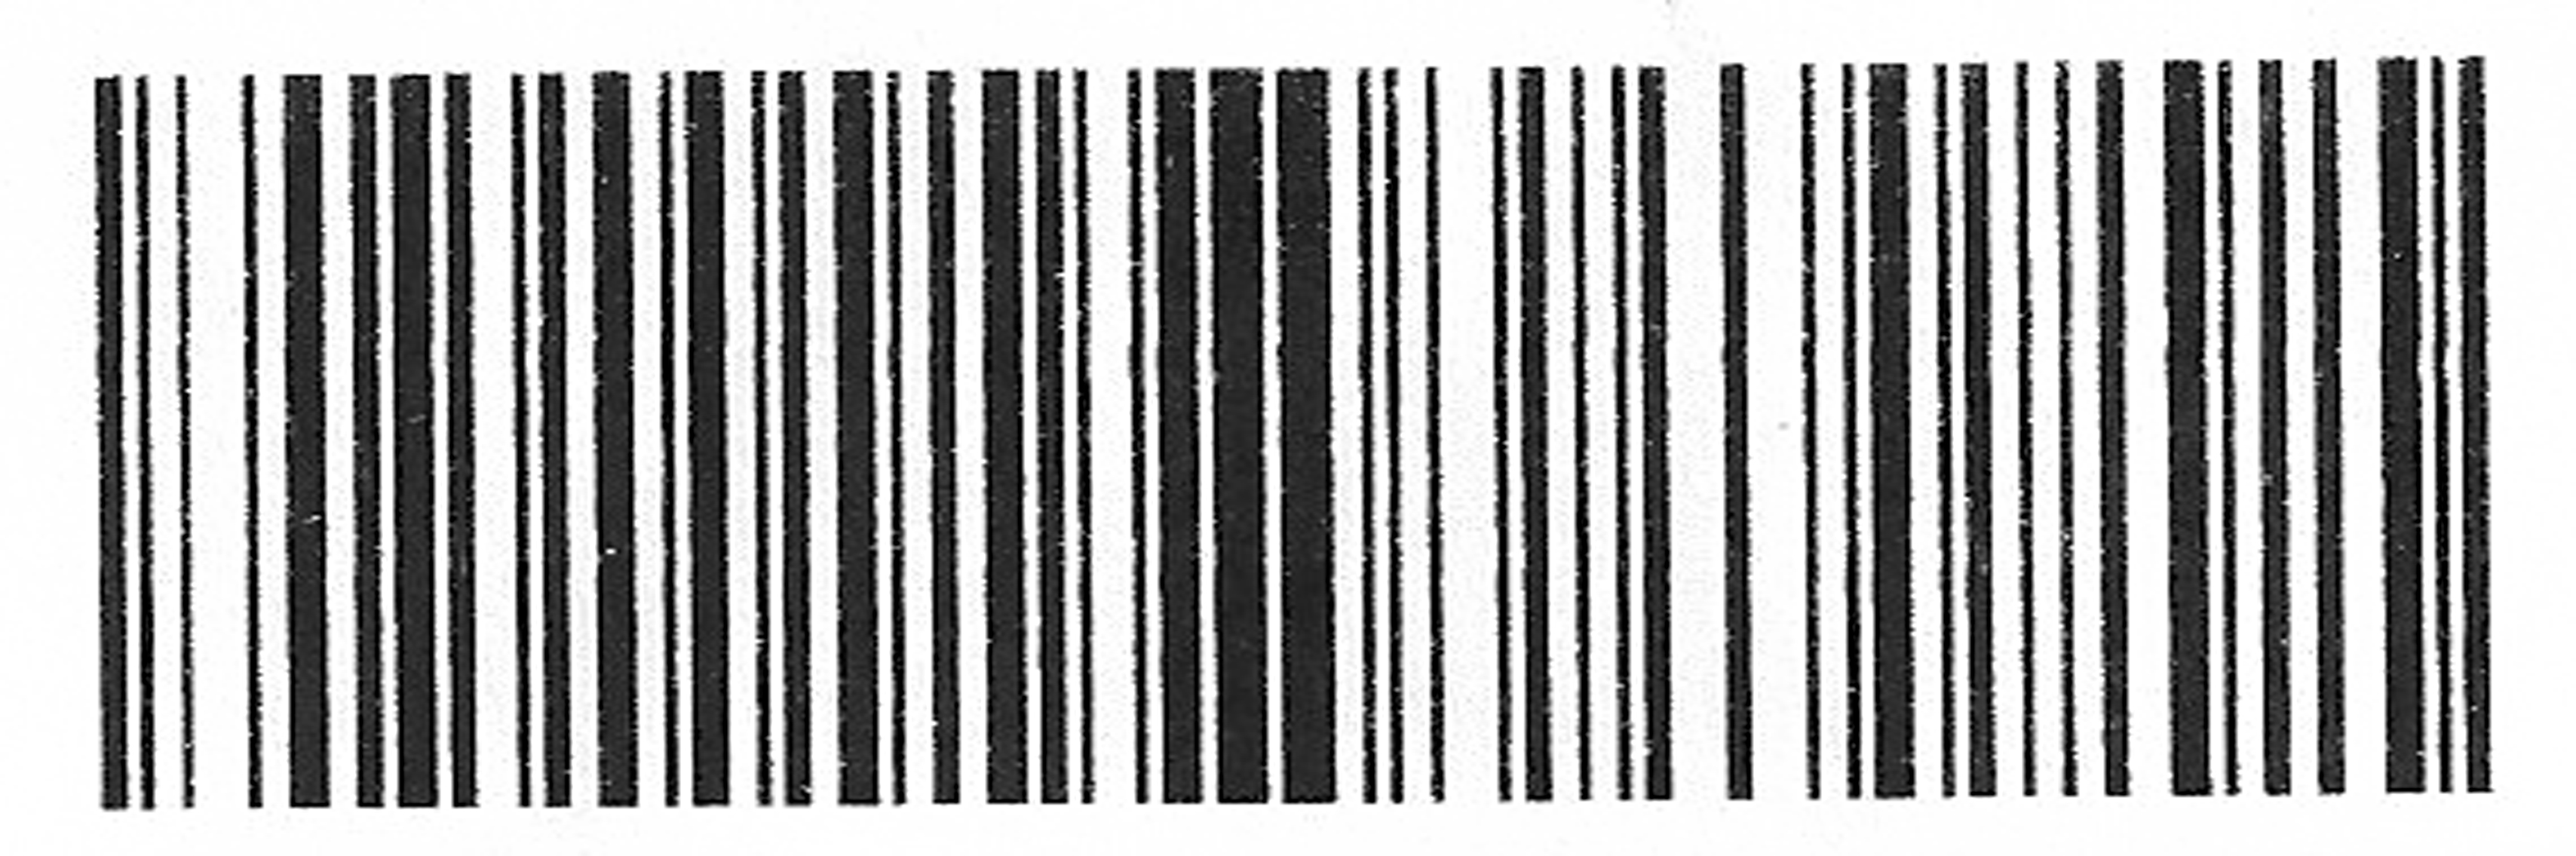 fake-barcode-scribelopez